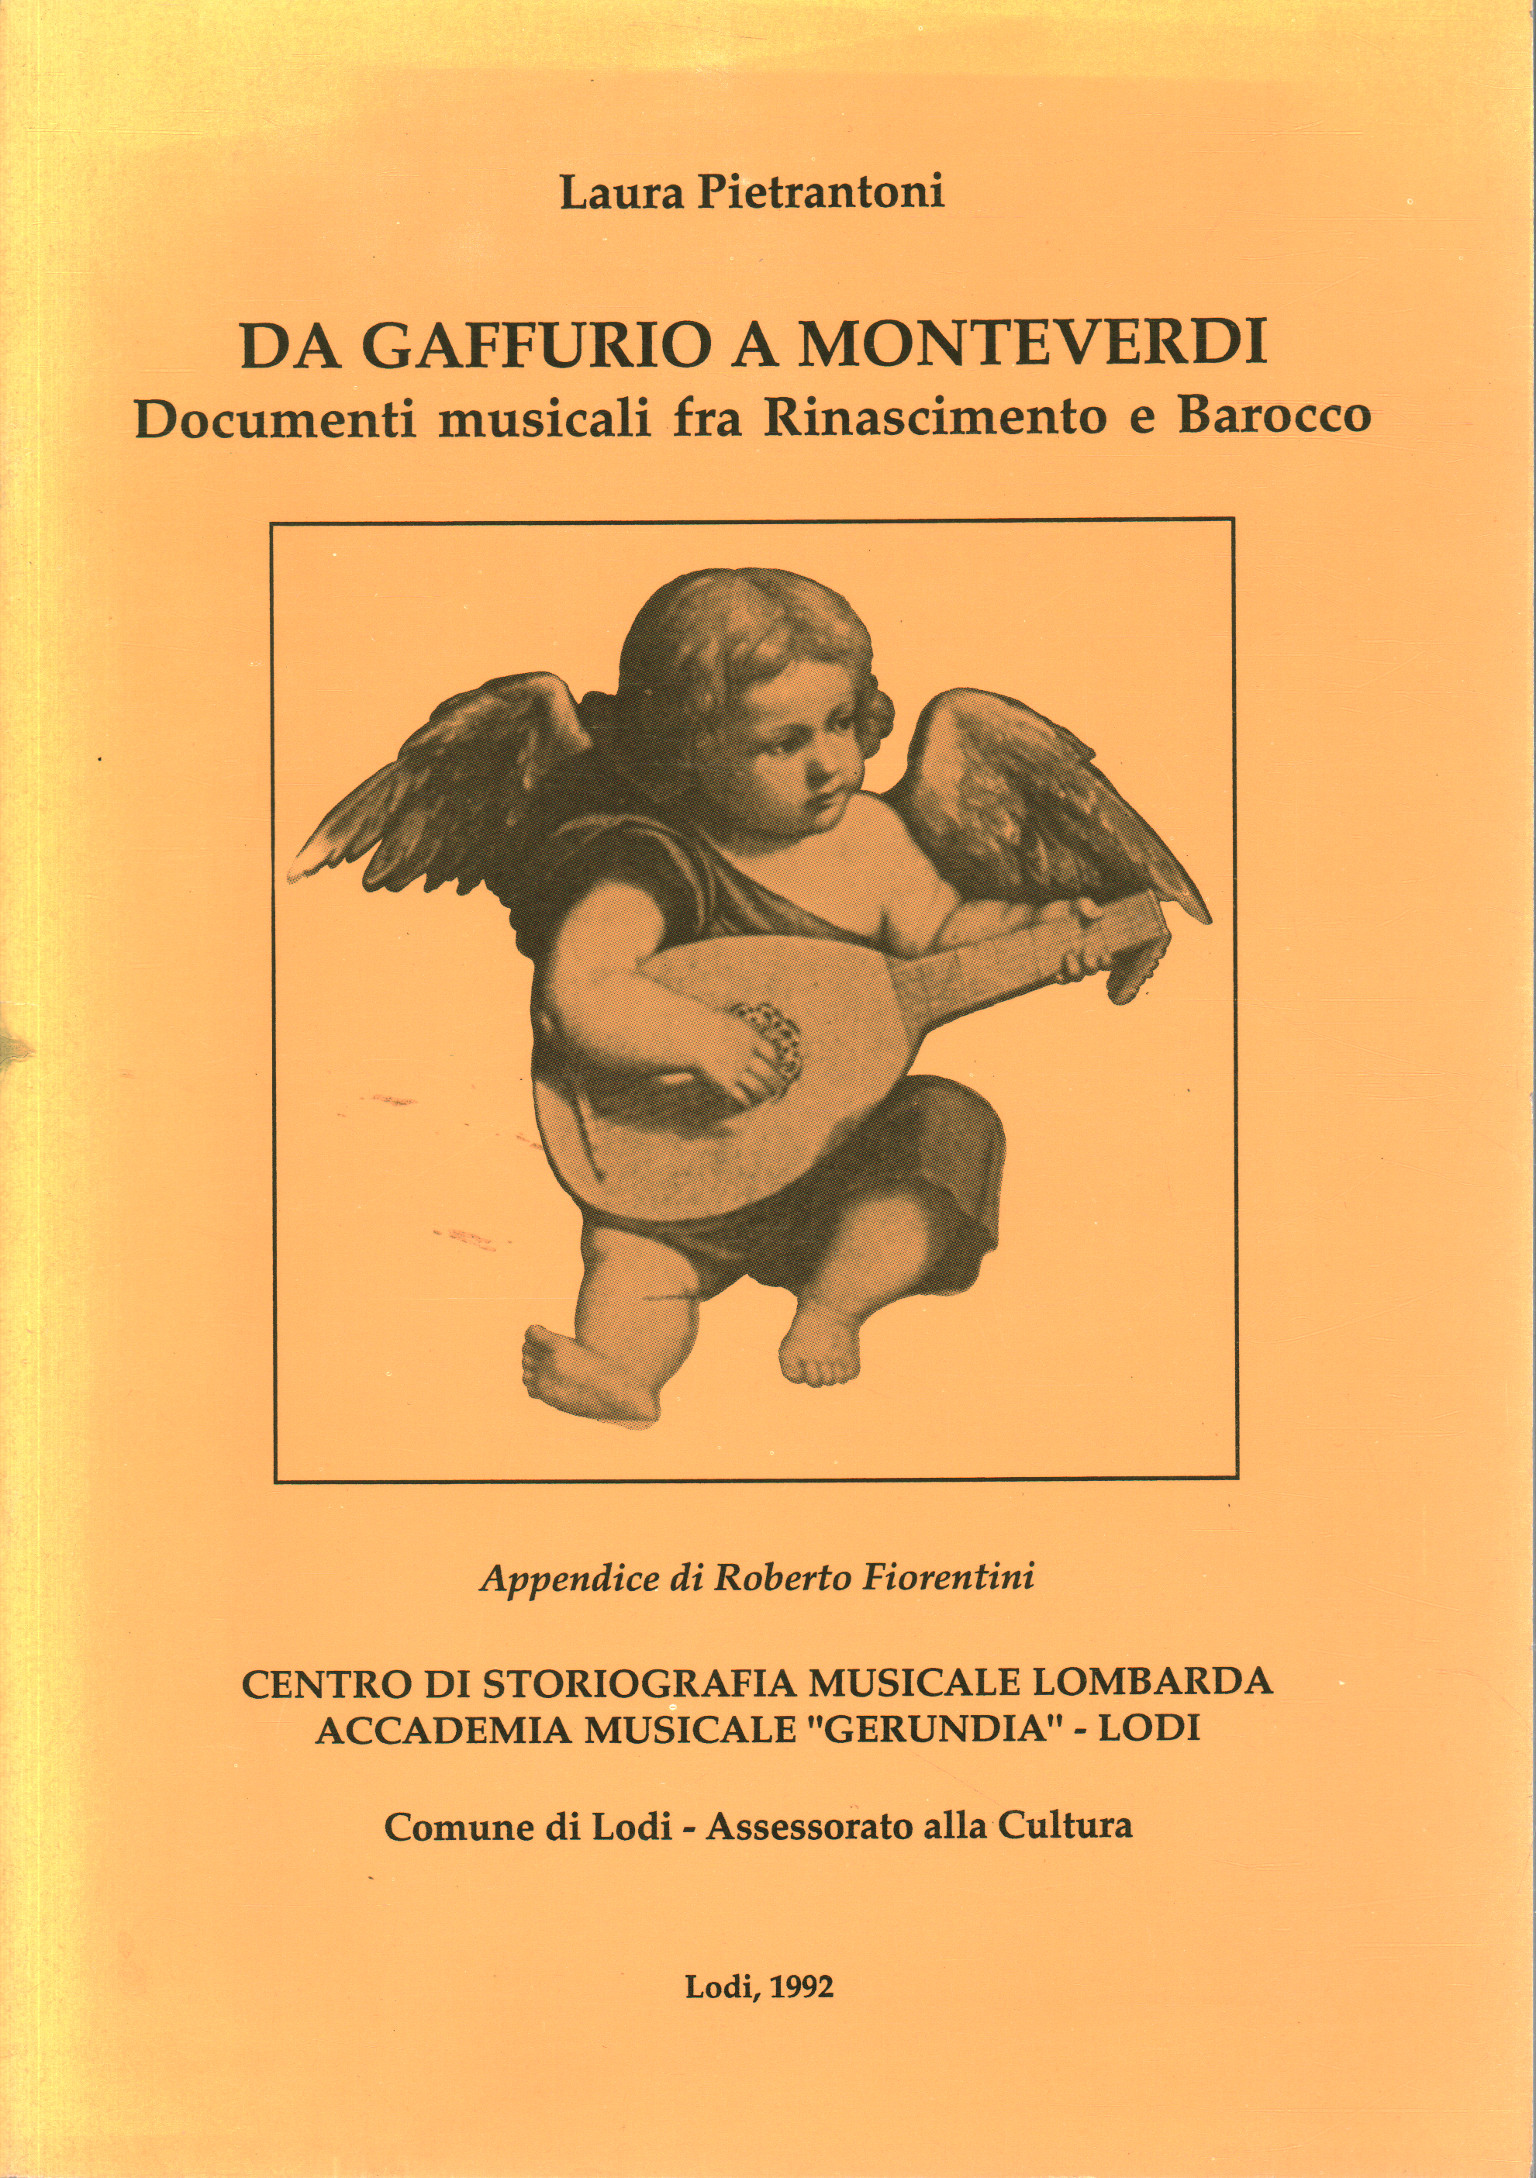 De Gaffurio à Monteverdi, Laura Pietrantoni